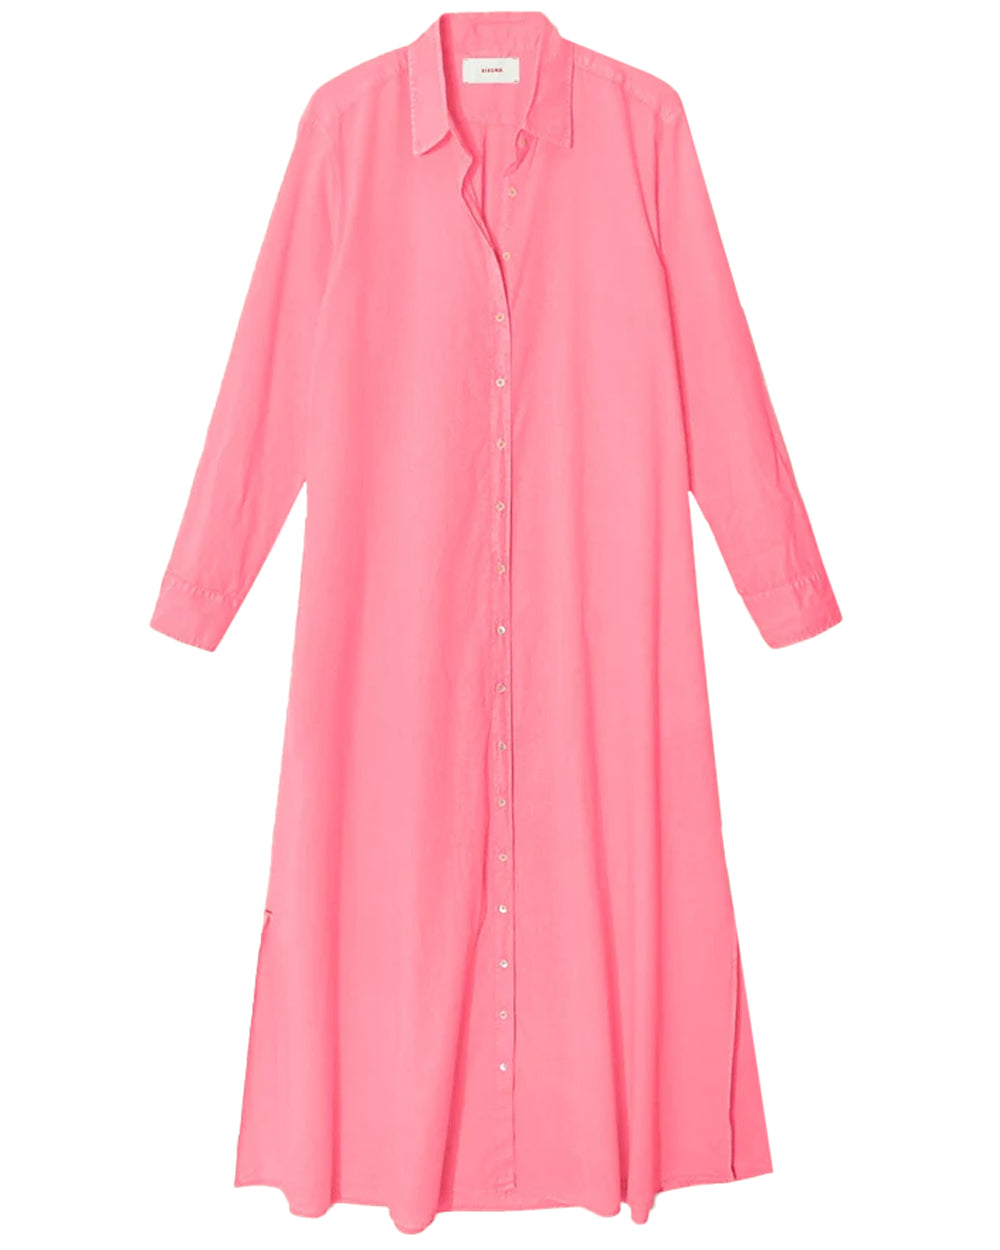 Neon Pink Boden Dress